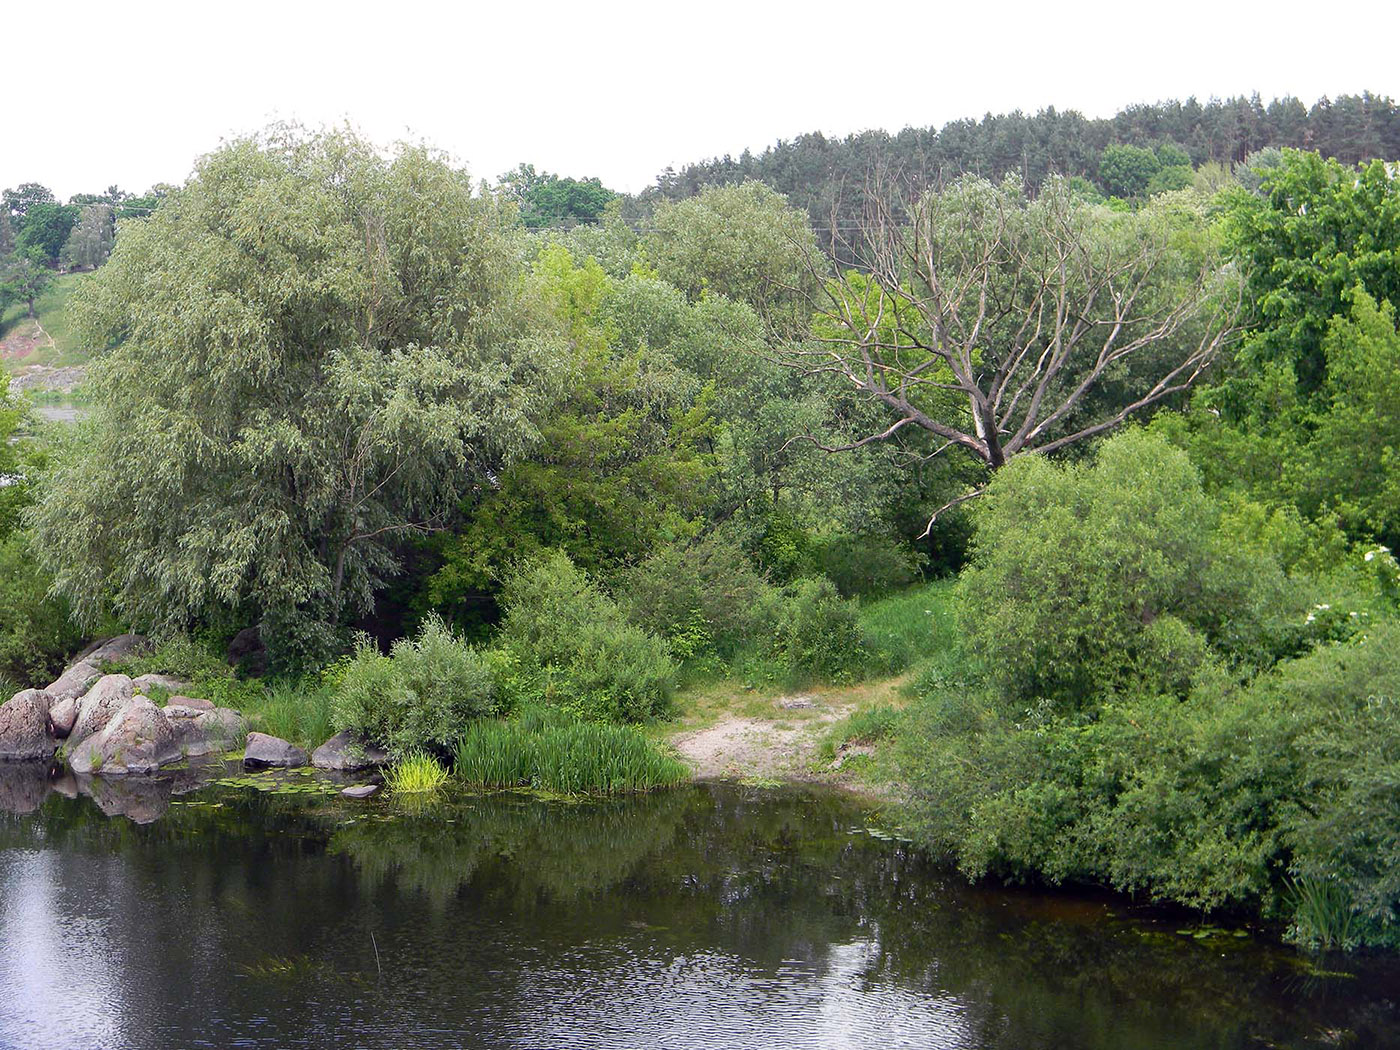 Новоград-Волынский, image of landscape/habitat.